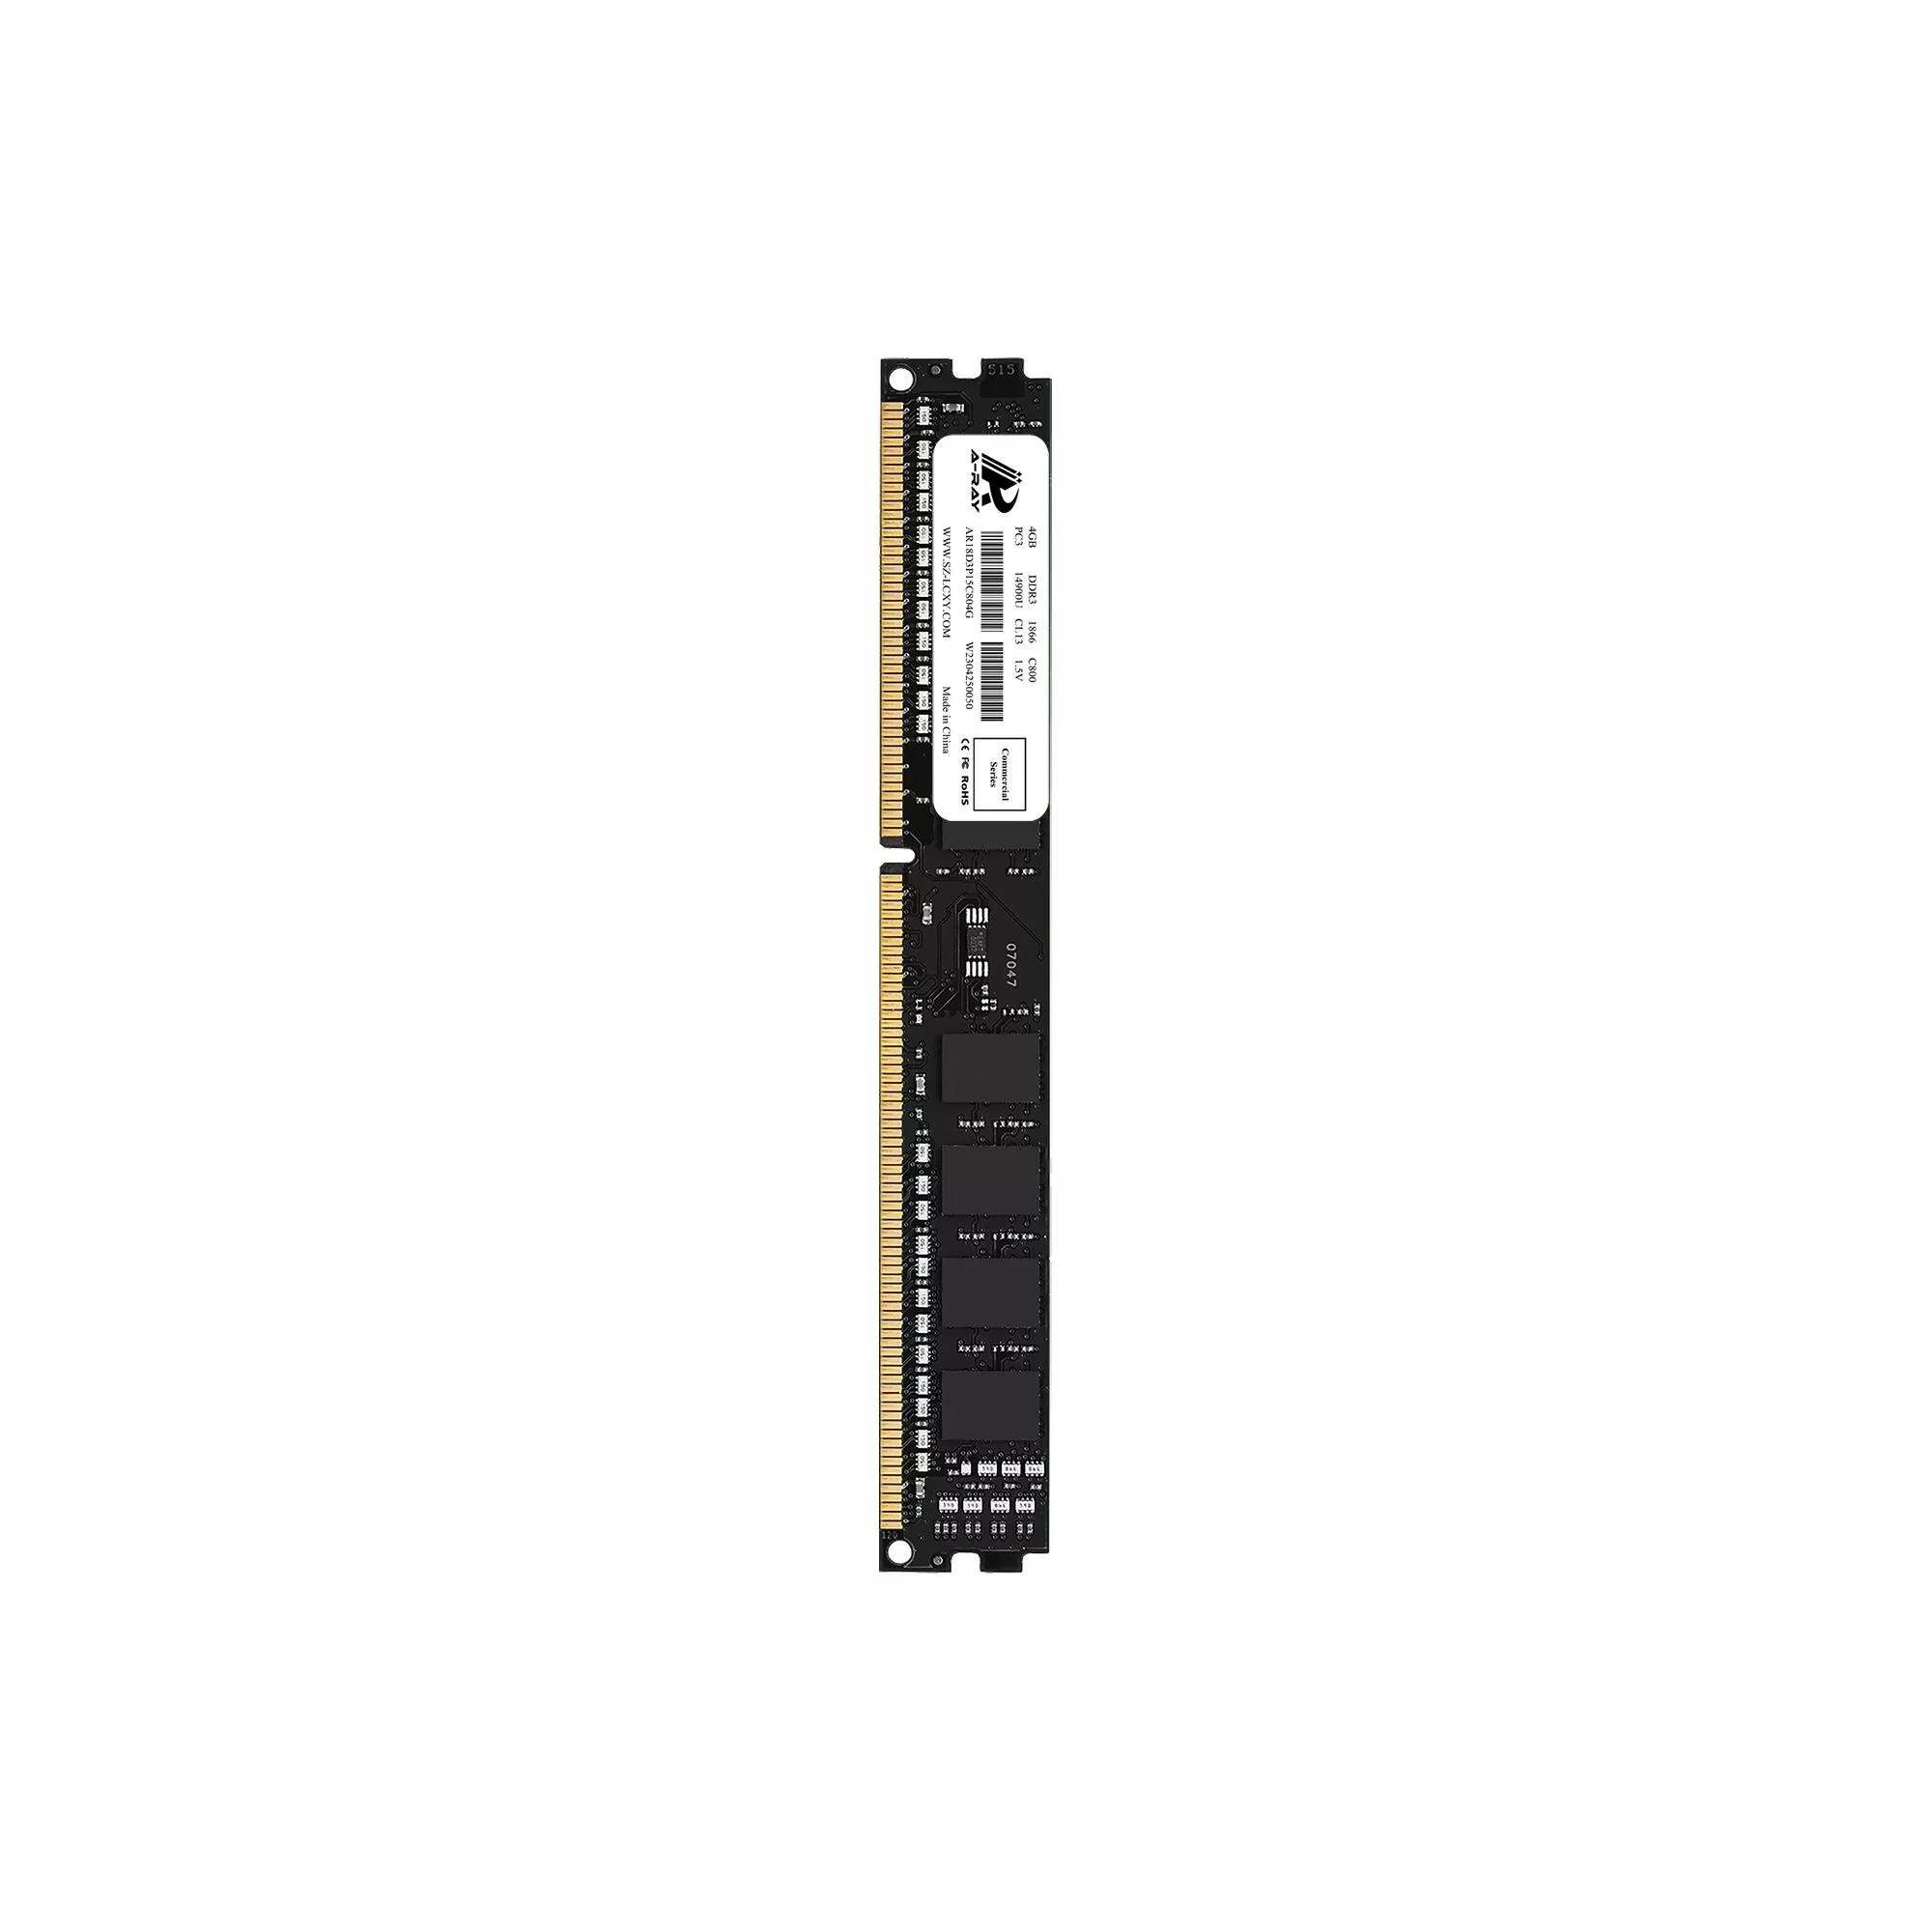 Ram A-Ray 4GB DDR3 Bus 1866 Mhz Desktop C800 14,928MB/s P/N: AR18D3P15C804G